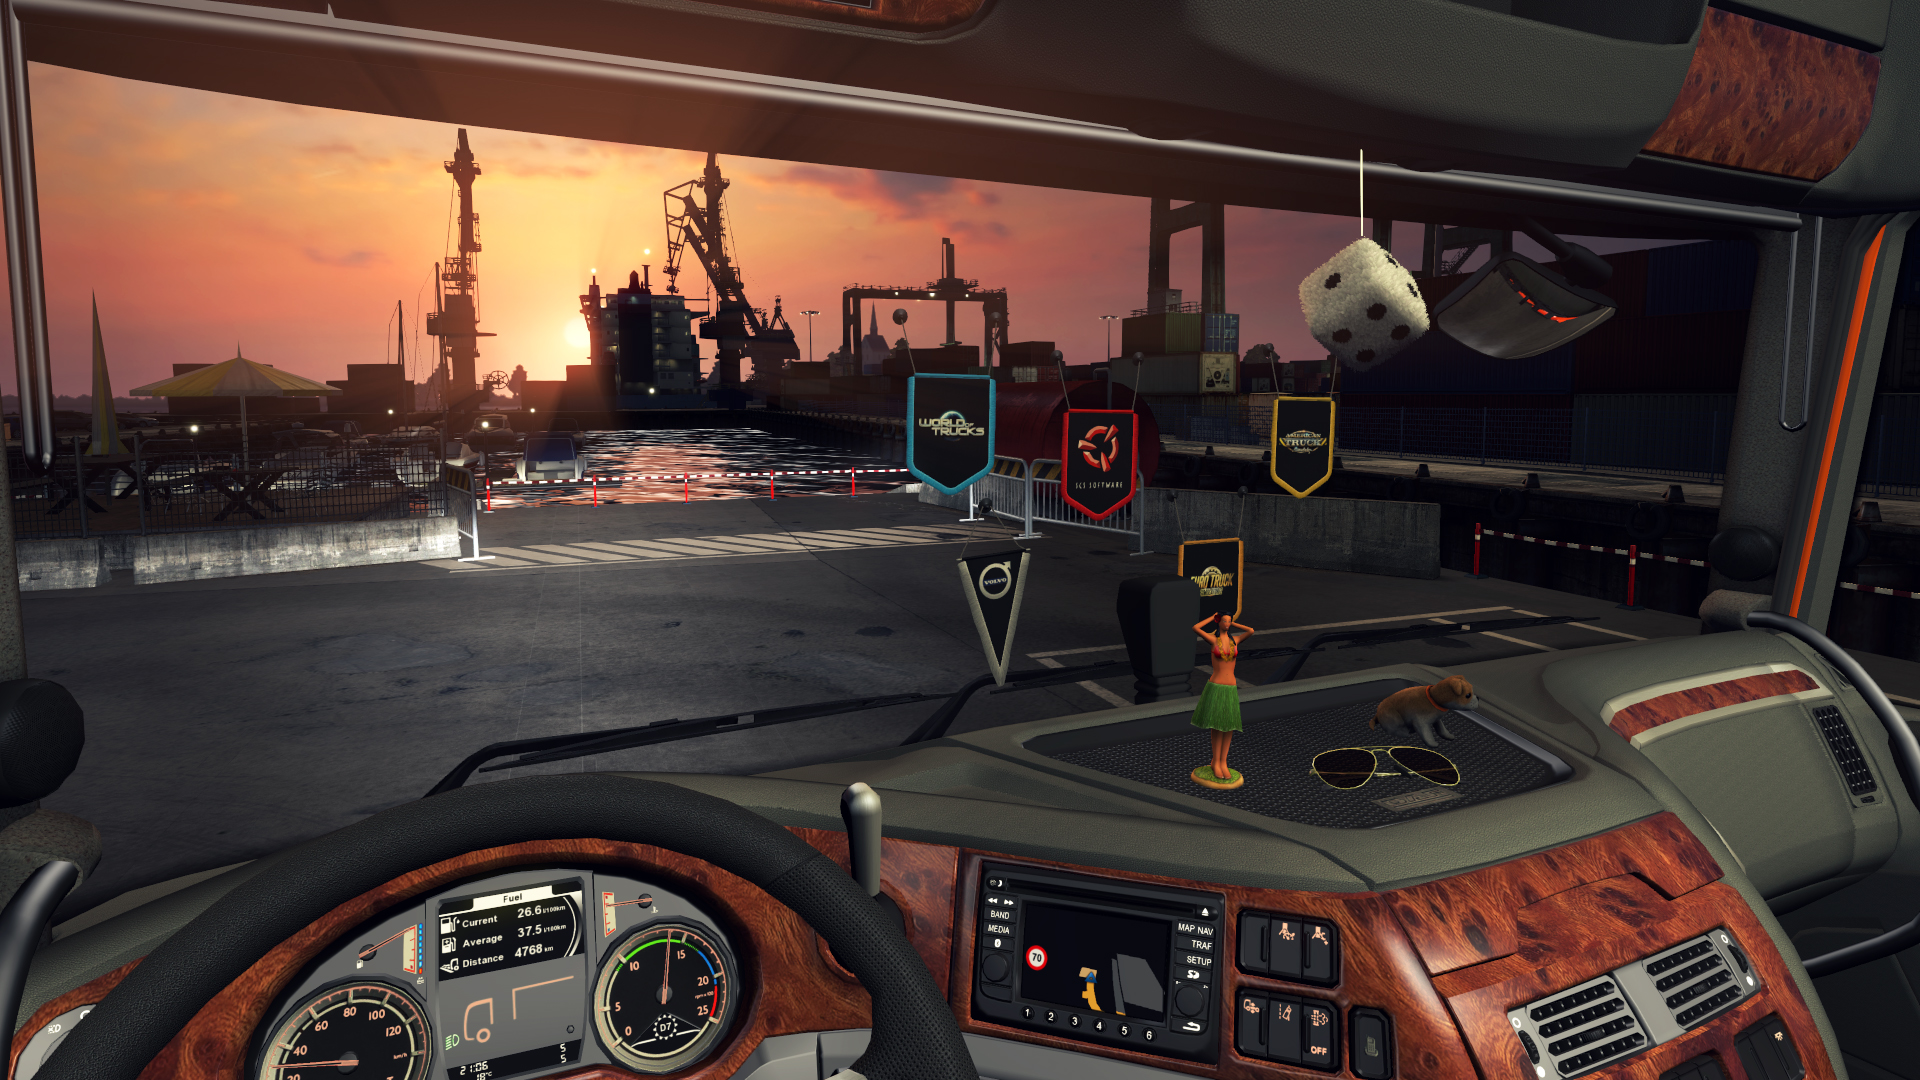 Euro Truck Simulator 2 - Cabin Accessories screenshot